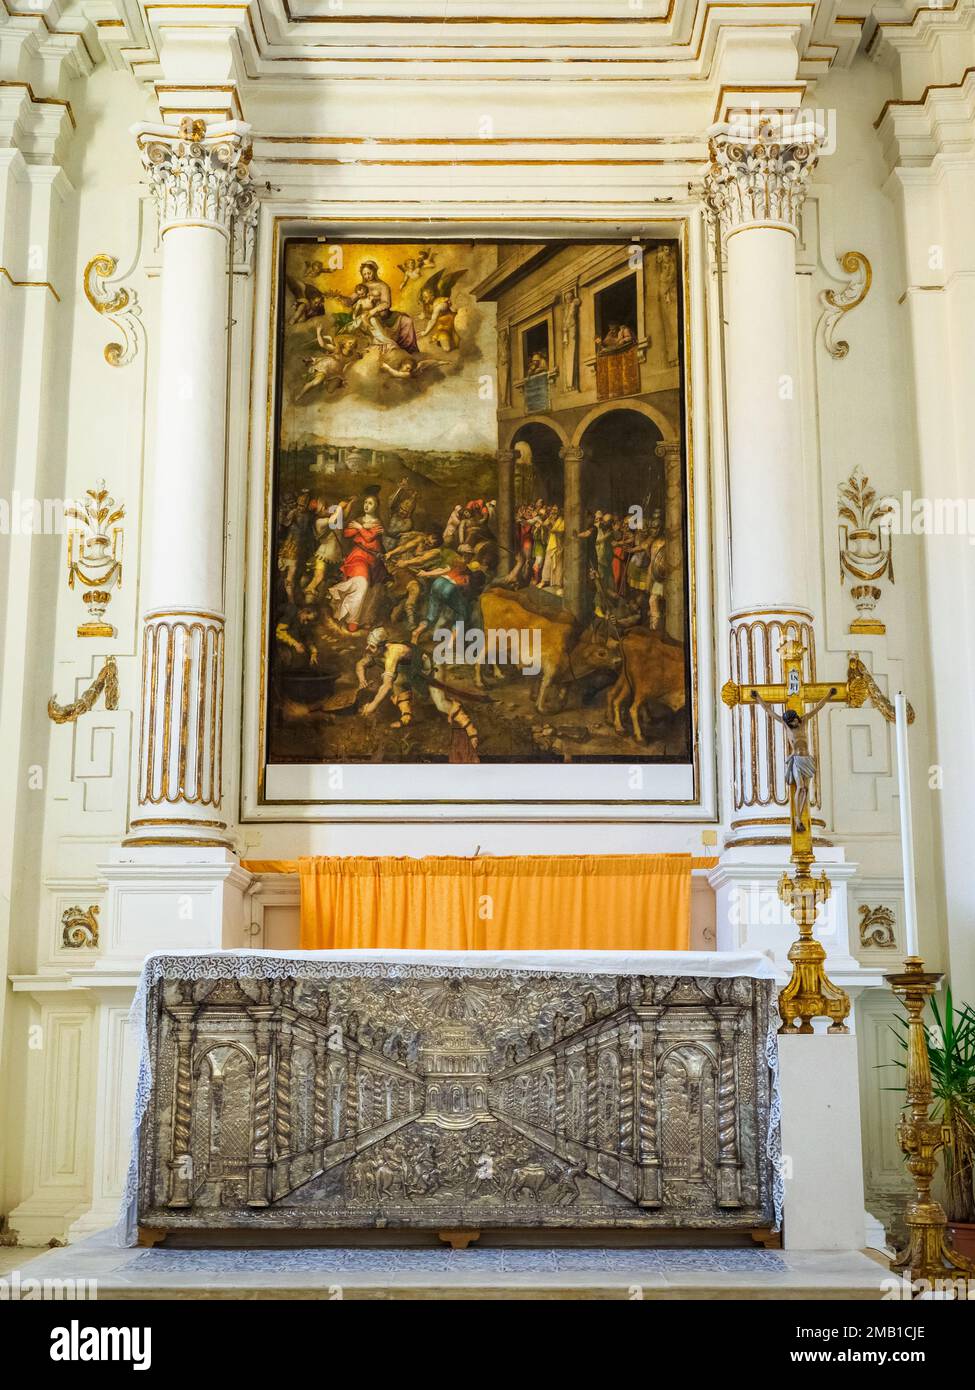 Haut autel avec la peinture représentant le martyre de Santa Lucia par Deodato Guinaccia 1579 dans l'église Santa Lucia alla Badia - Syracuse, Sicile, Italie Banque D'Images